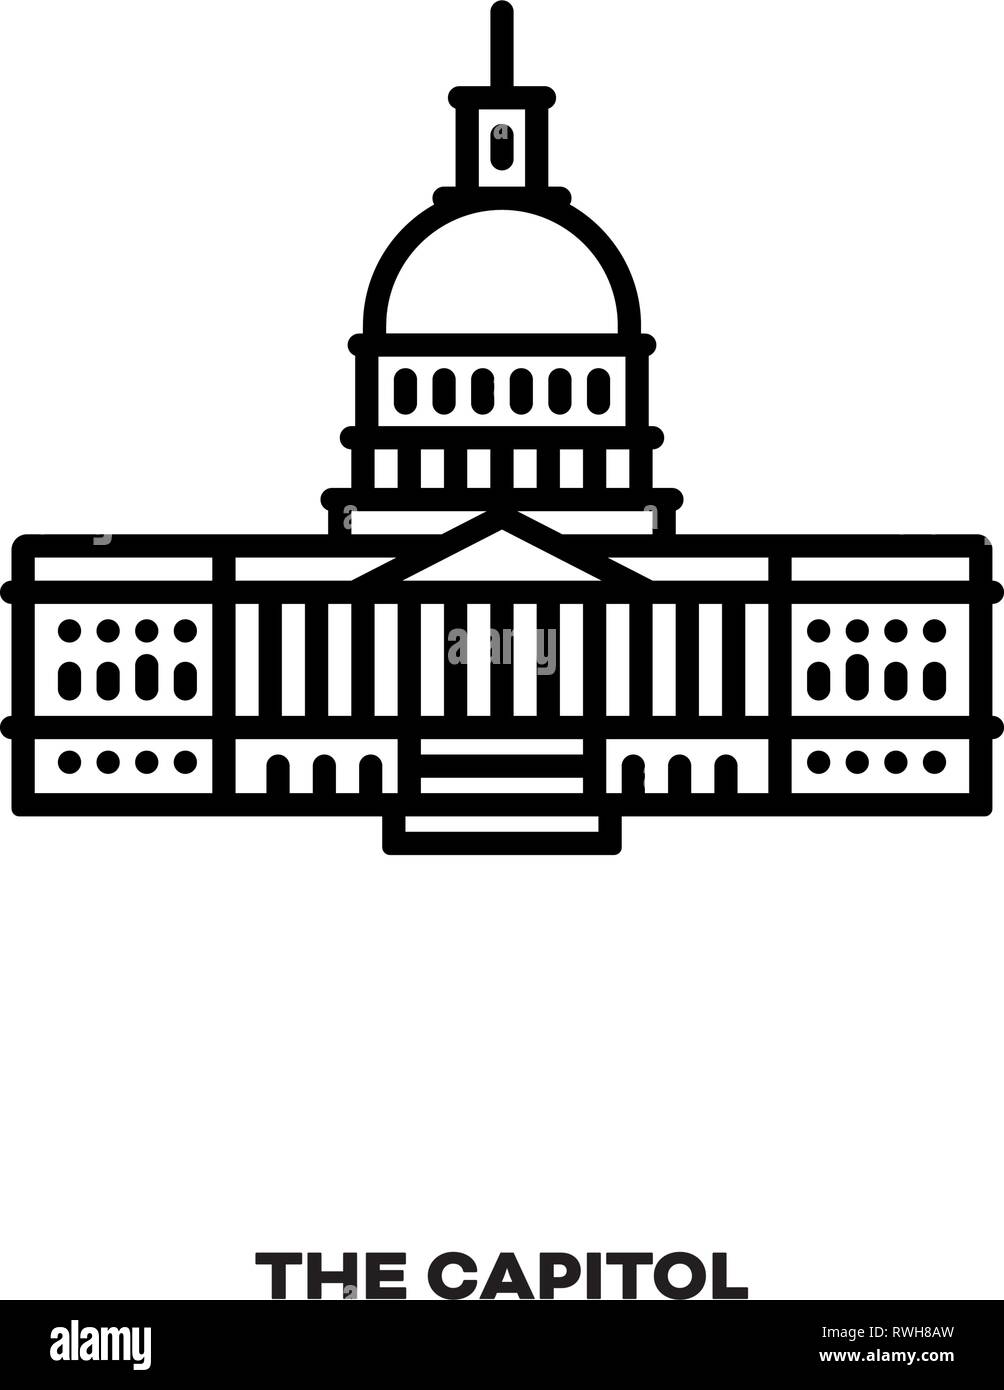 Das Kapitol, Kongresshaus in Washington, D.C., Vereinigte Staaten von Amerika, Vektor Symbol Leitung. Internationale Sehenswürdigkeiten und Tourismus Symbol. Stock Vektor